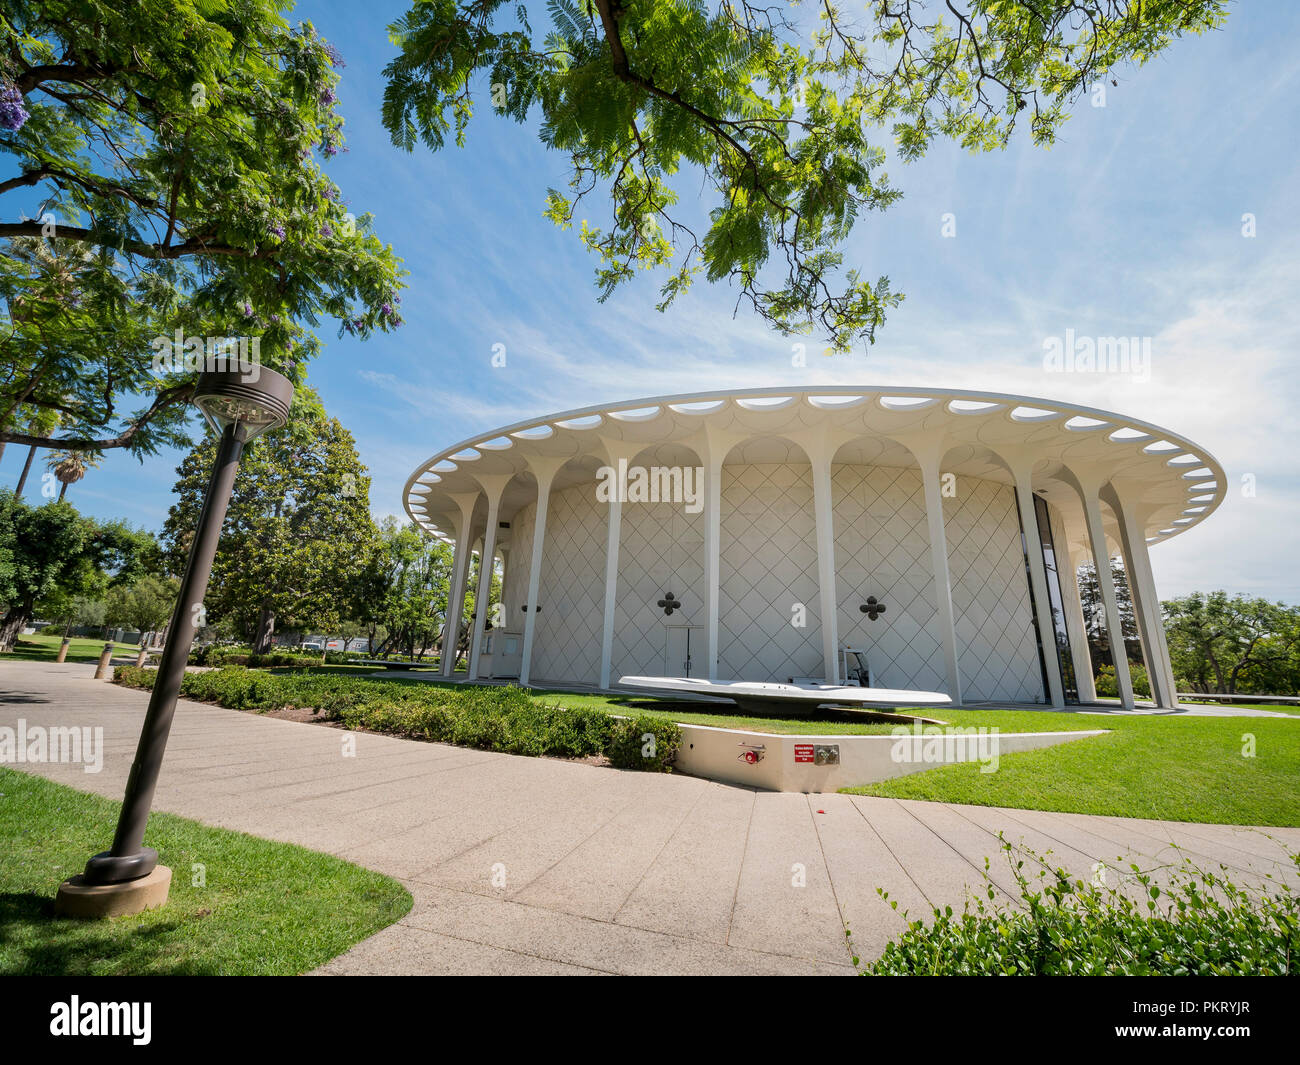 Los Angeles, 21 JUIL : Vue extérieure de la Beckman Auditorium à Caltech le Jul 21, 2018 à Los Angeles, Californie Banque D'Images